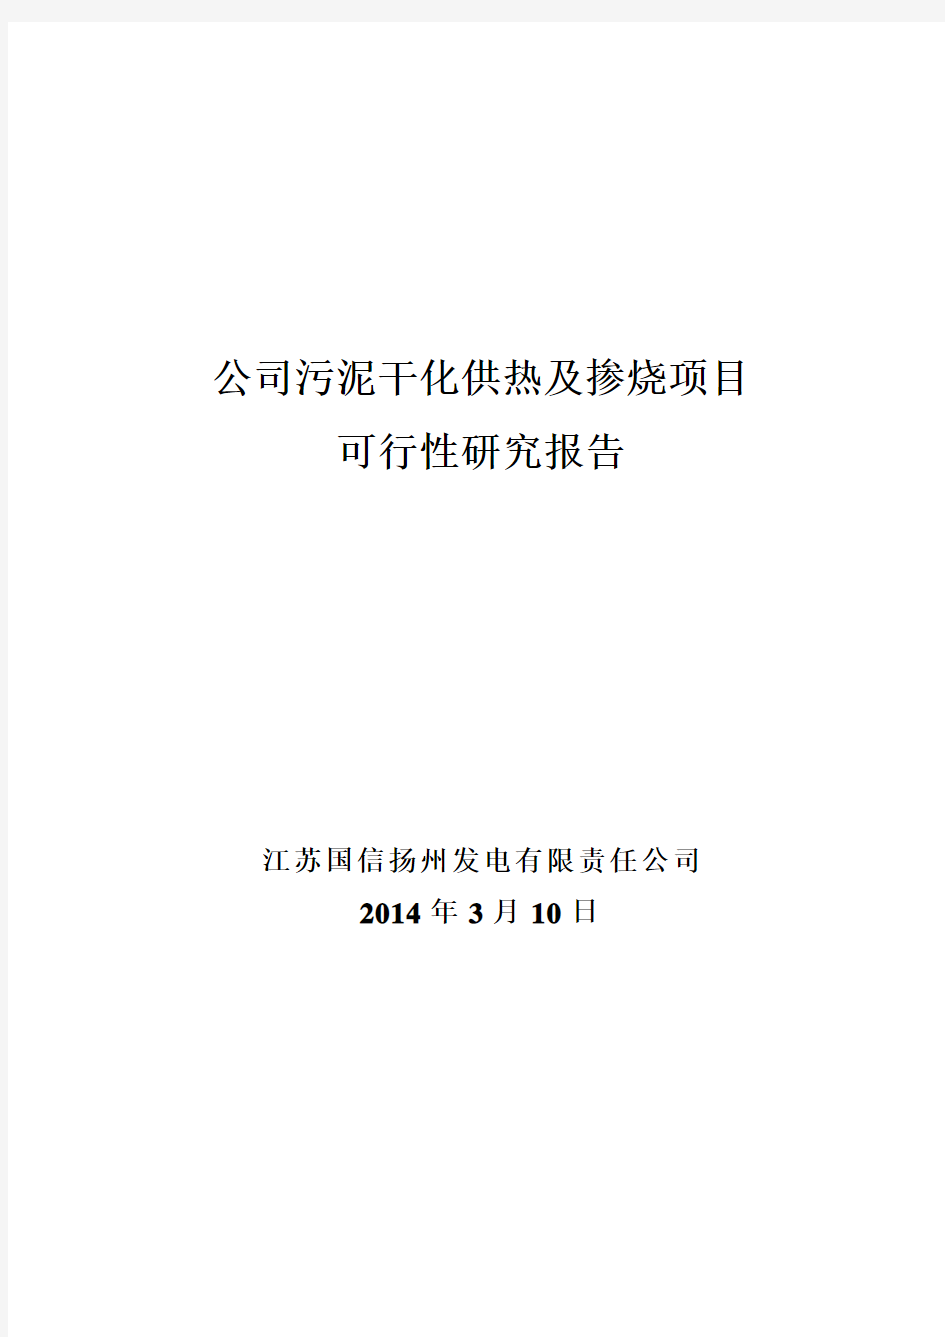 公司污泥干化项目供热及掺烧可行性研究报告(20140312)